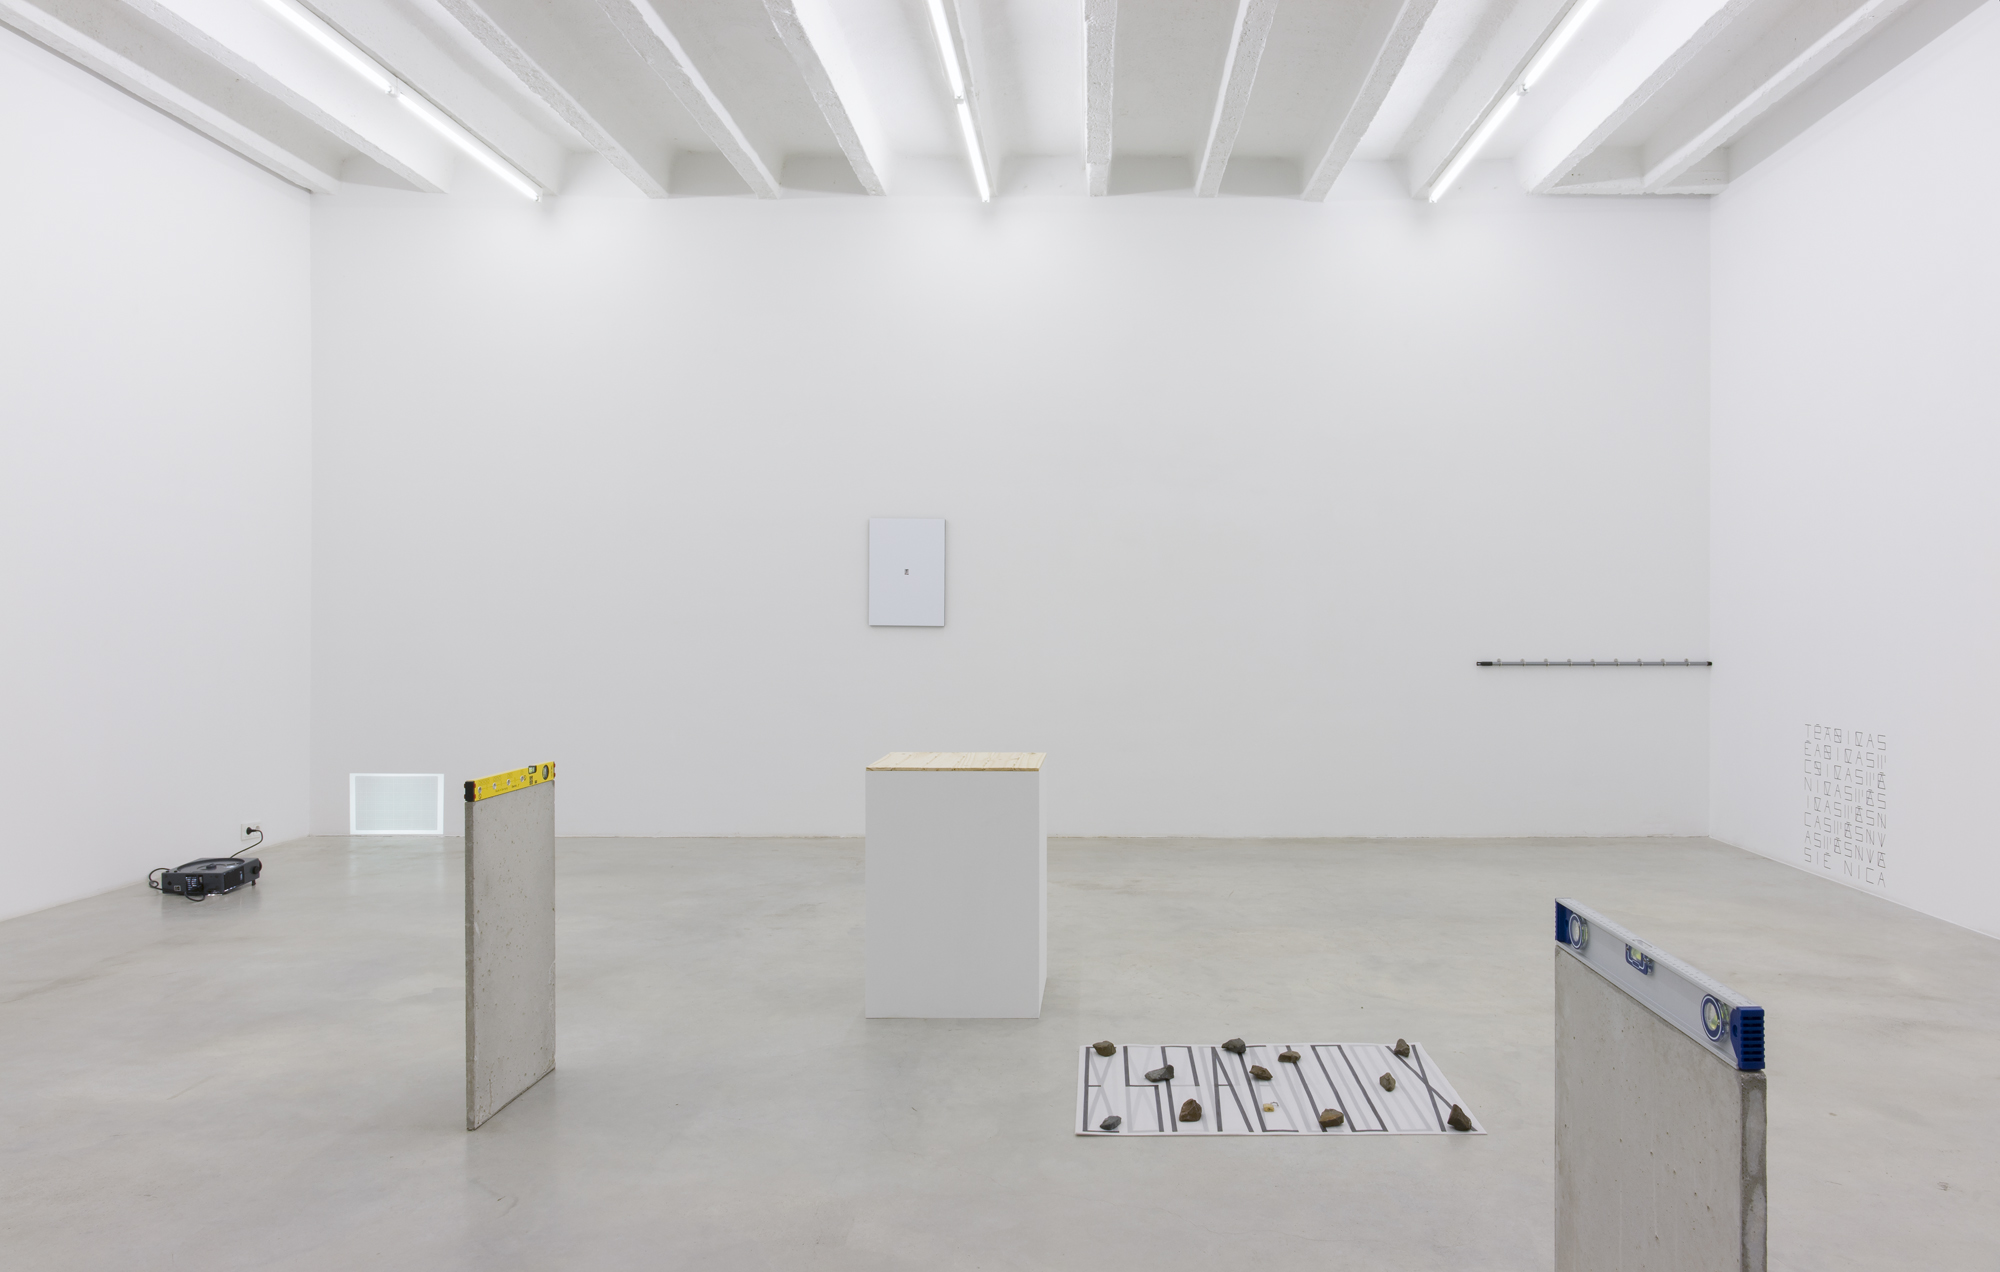 Pablo Accinelli, Técnicas Pasivas, exhibition view, Galerija Gregor Podnar, Berlin, 2016. Photo: Marcus Schneider